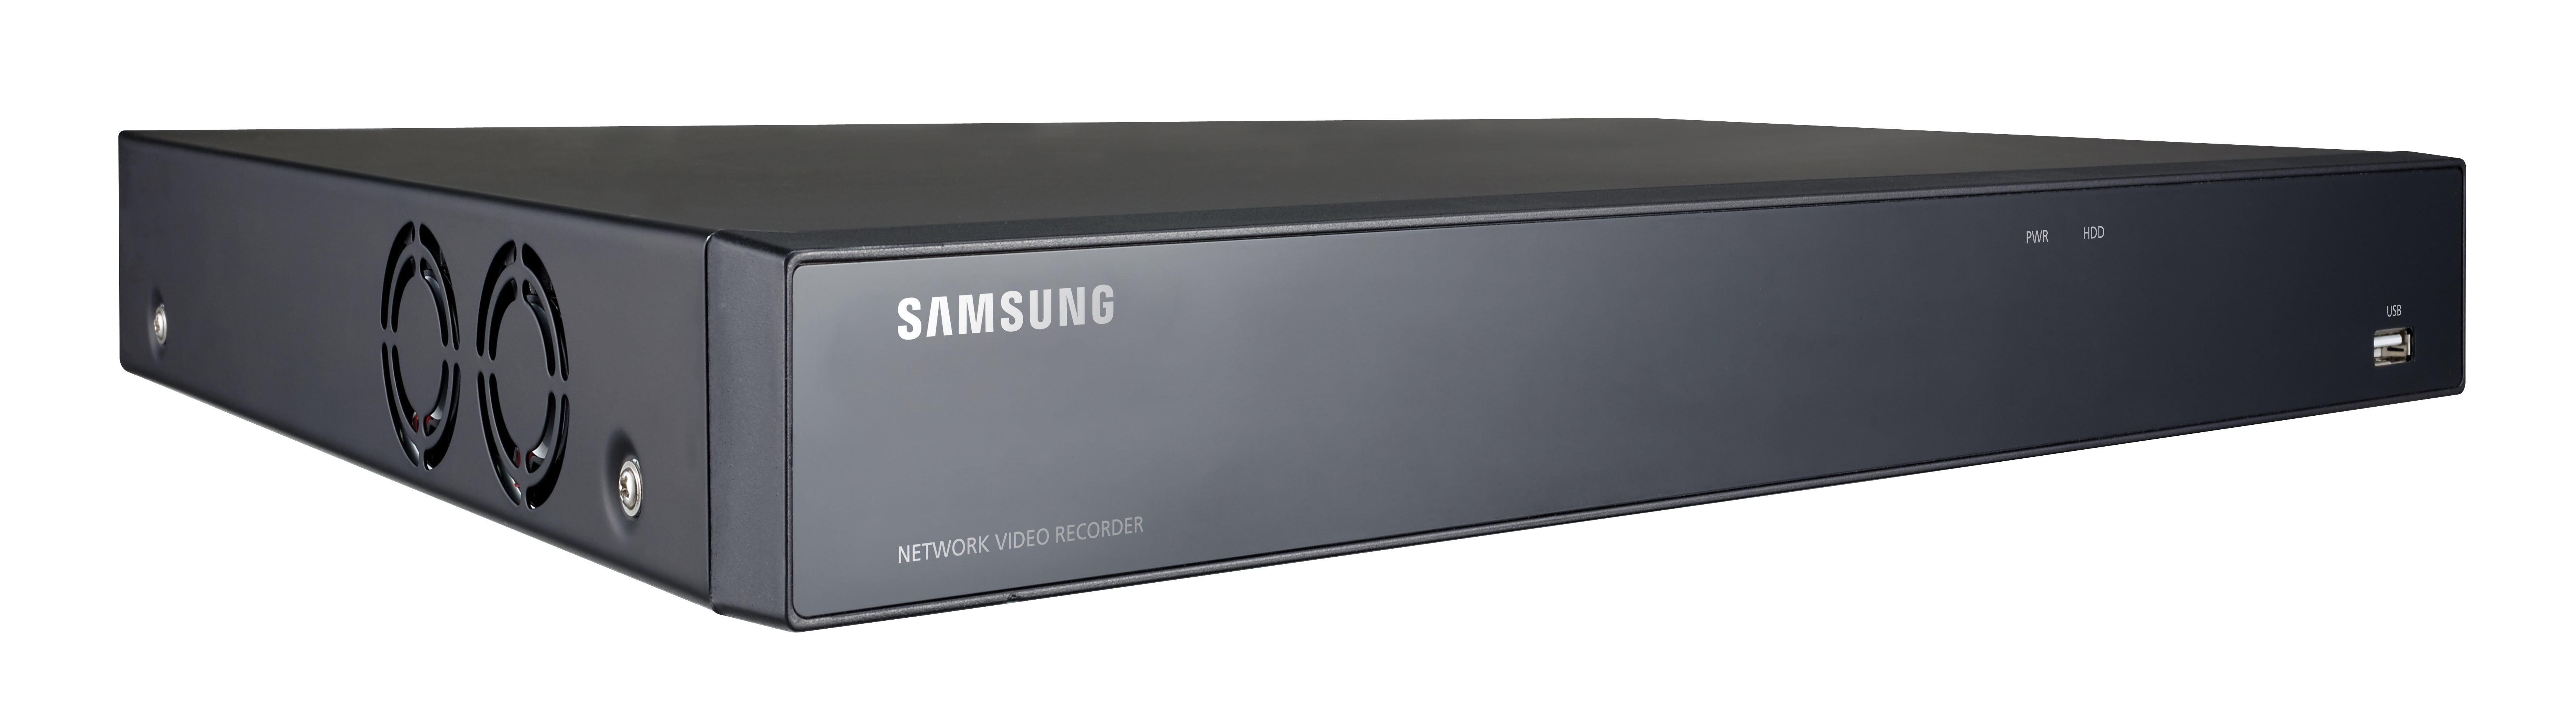 Samsung 8 Camera Security System, 16 Channels, 4 Megapixel, Super